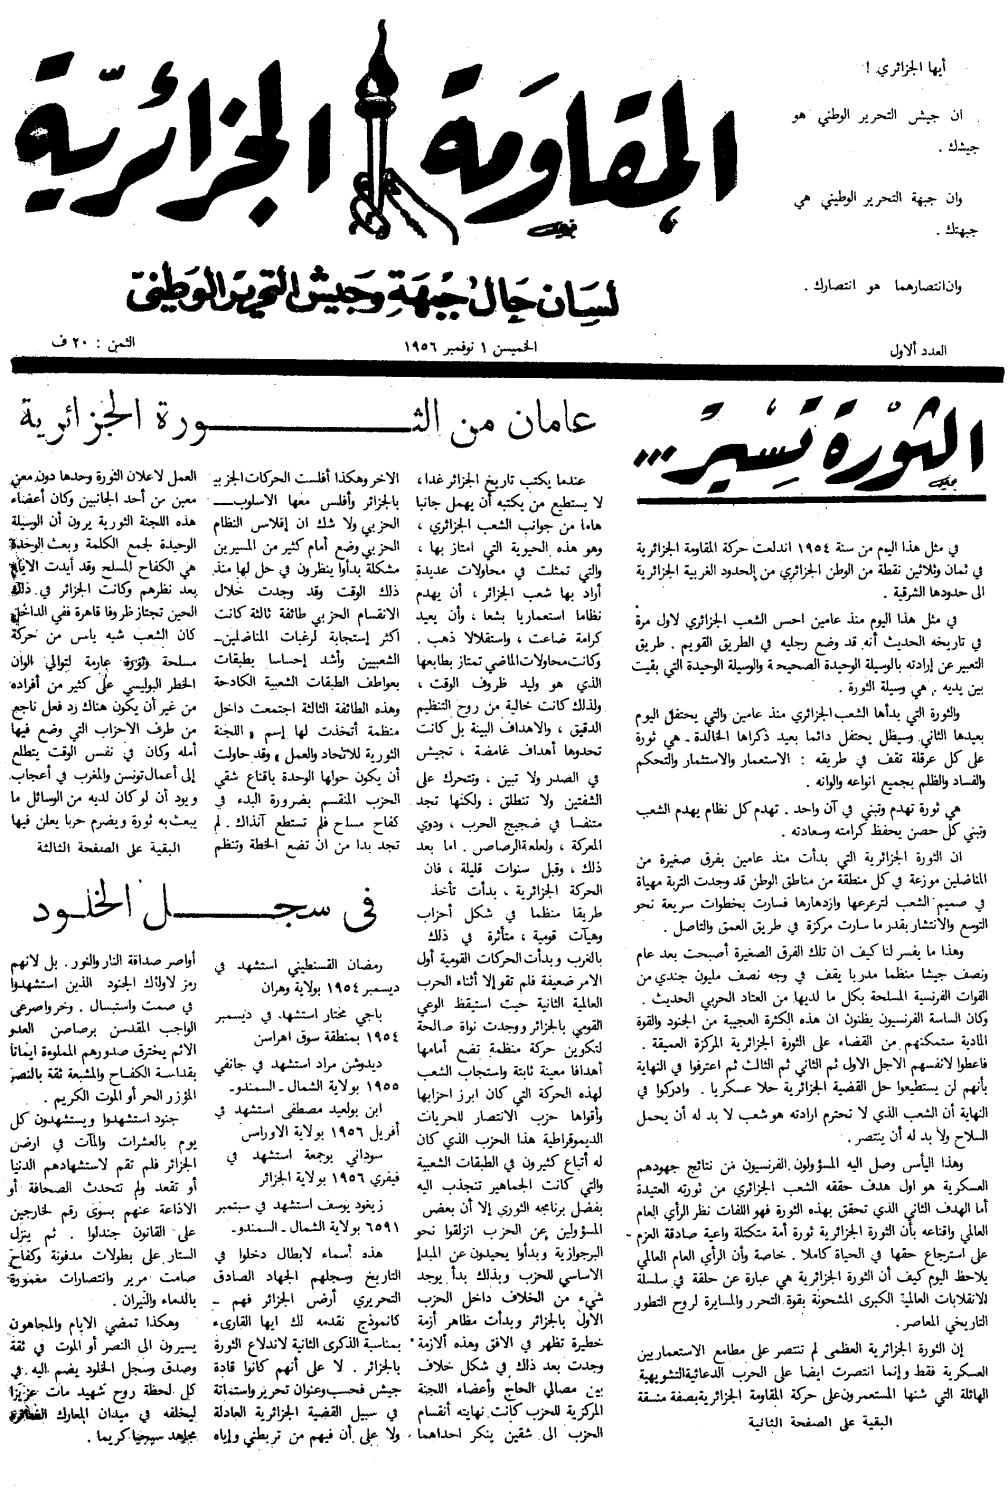 مالحق الملحق رقم )9( جريدة المقاومة الج ازئرية جريدة